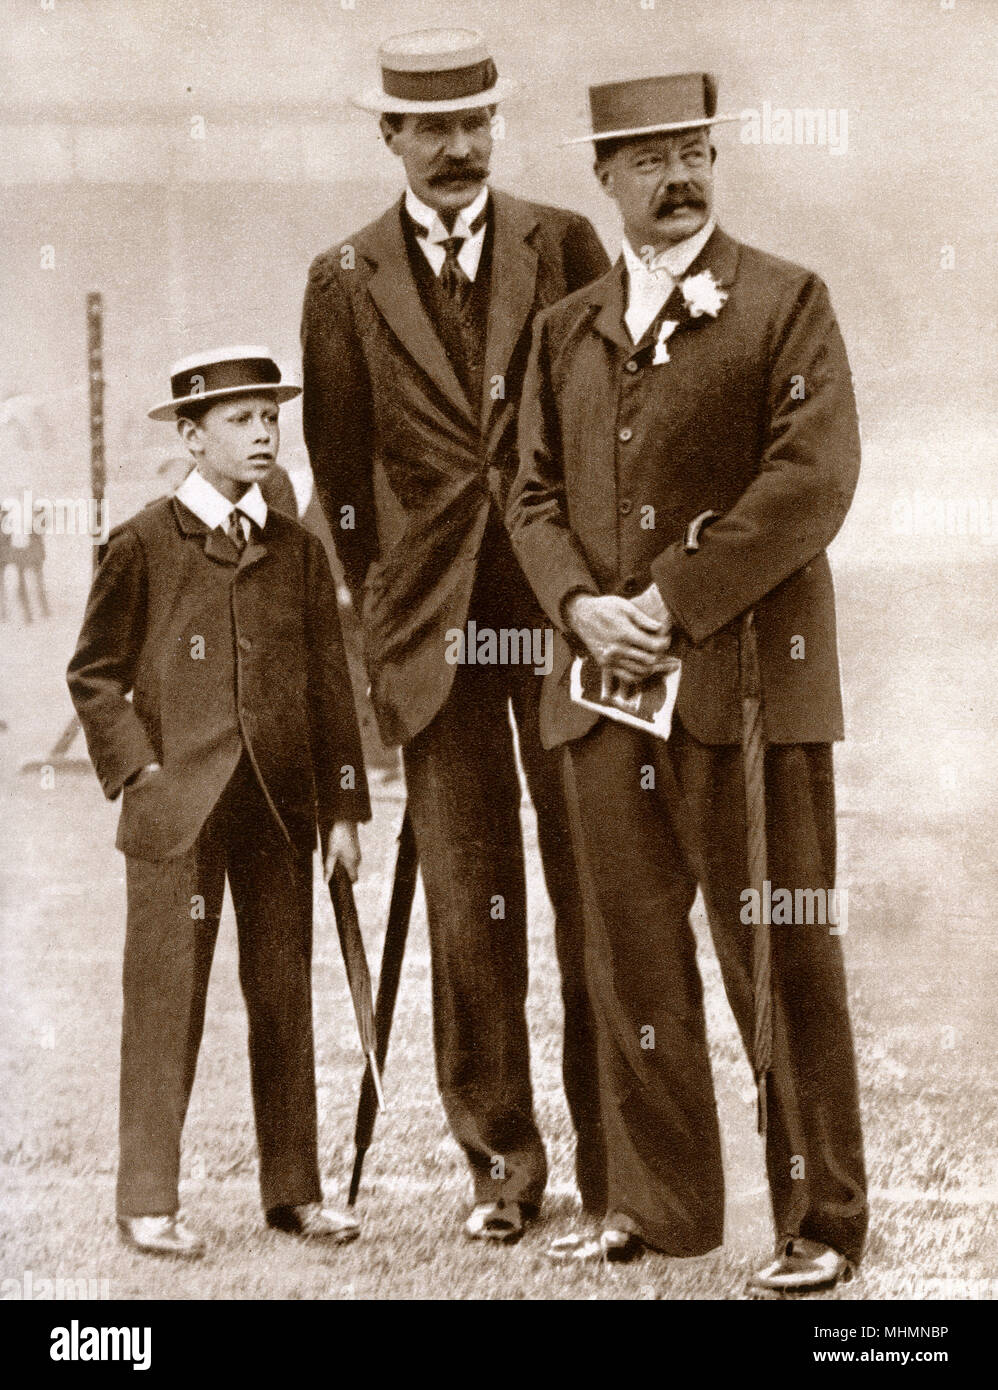 Prince Albert, il Duca di York (1895-1952) (più tardi re George VI) - il suo tutor signor H. P. Hansell - William Grenfell, primo Baron Desborough (1855-1945) - Immagini a livello amatoriale atletica associazione meeting a Londra nel 1908. Data: 1908 Foto Stock